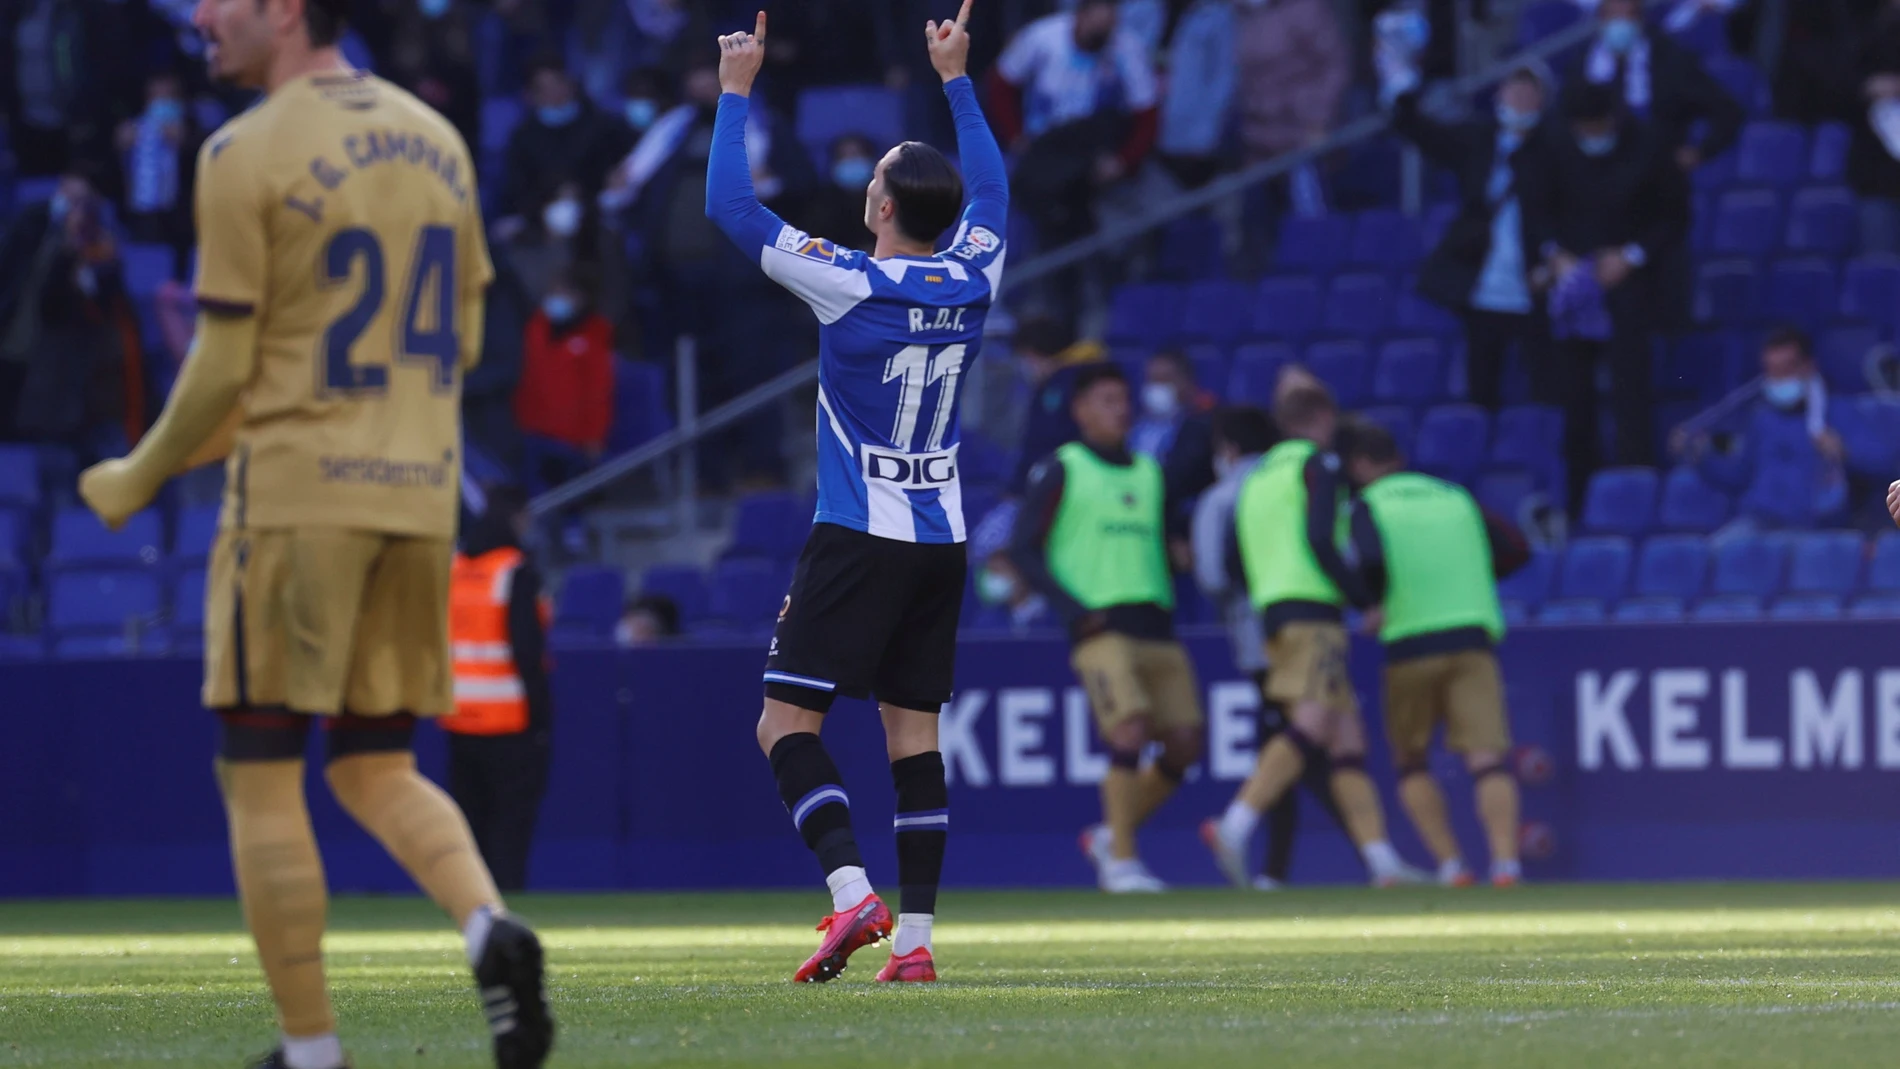 El delantero del Espanyol José Luis Morales, celebra su gol contra el Levante, durante el partido de Liga de Primera división en el RCDE Stadium.